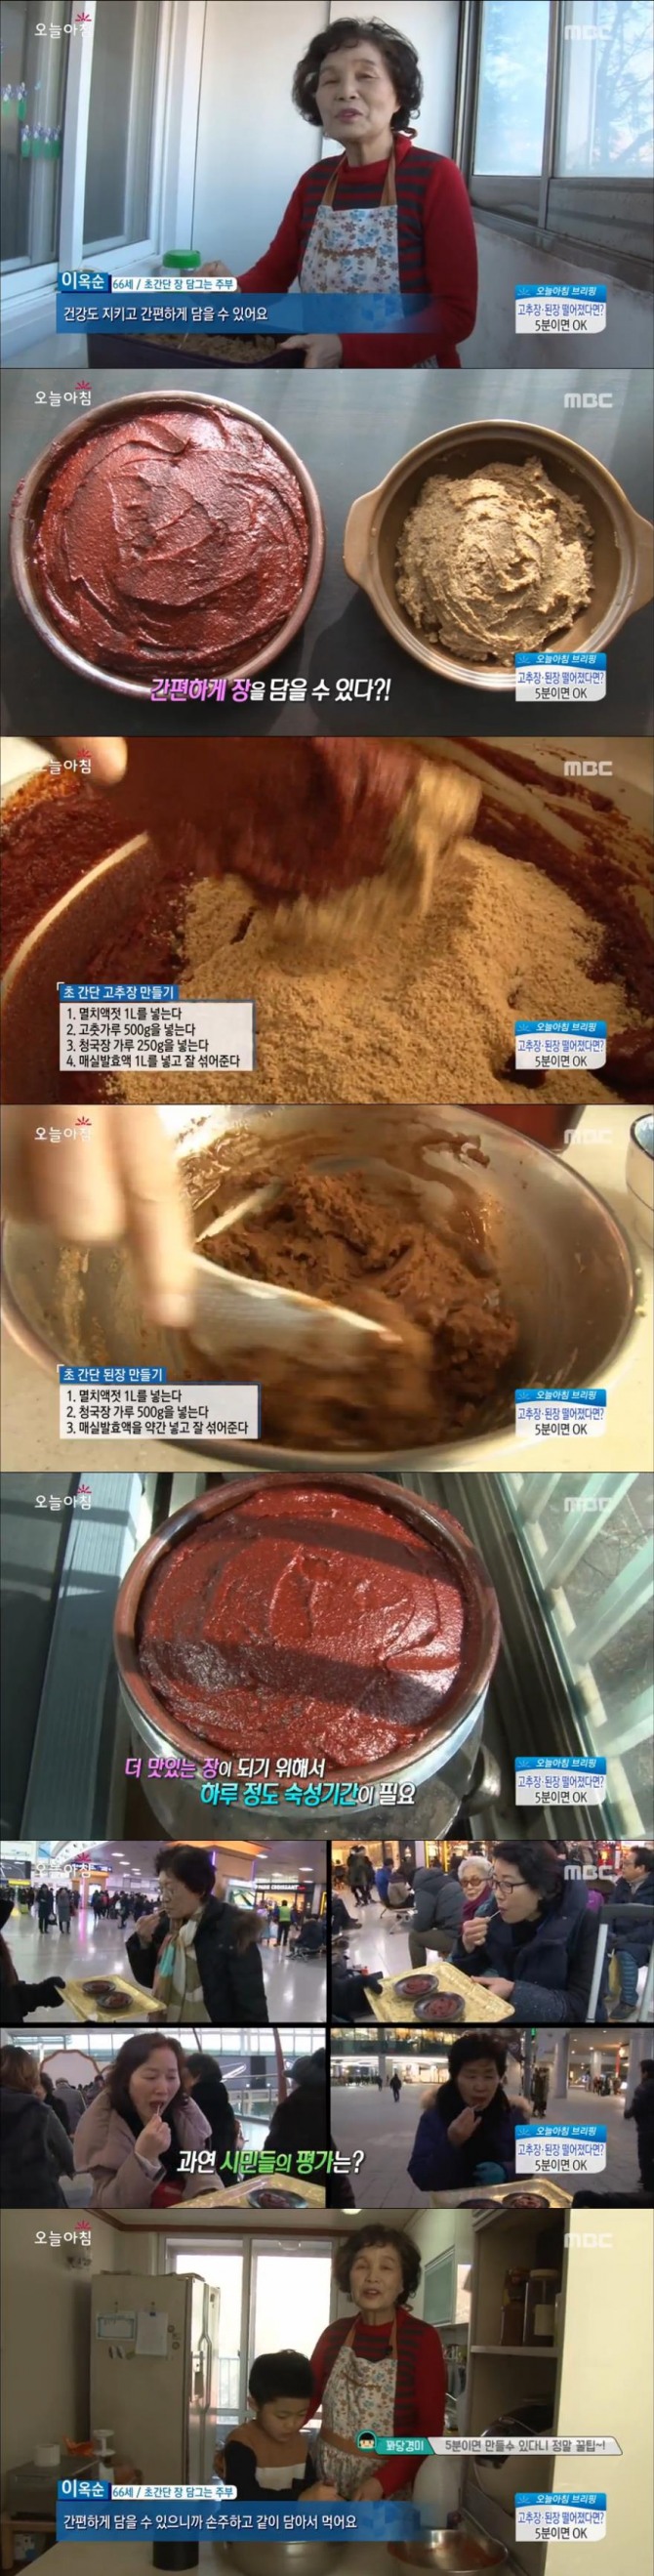 16일 방송된 MBC '생방송 오늘아침'에는 이옥순 부주가 출연, 5분만에 만드는 초간단 고추장, 된장 만들기 비법을 공개했다./사진=MBC 방송 캡처